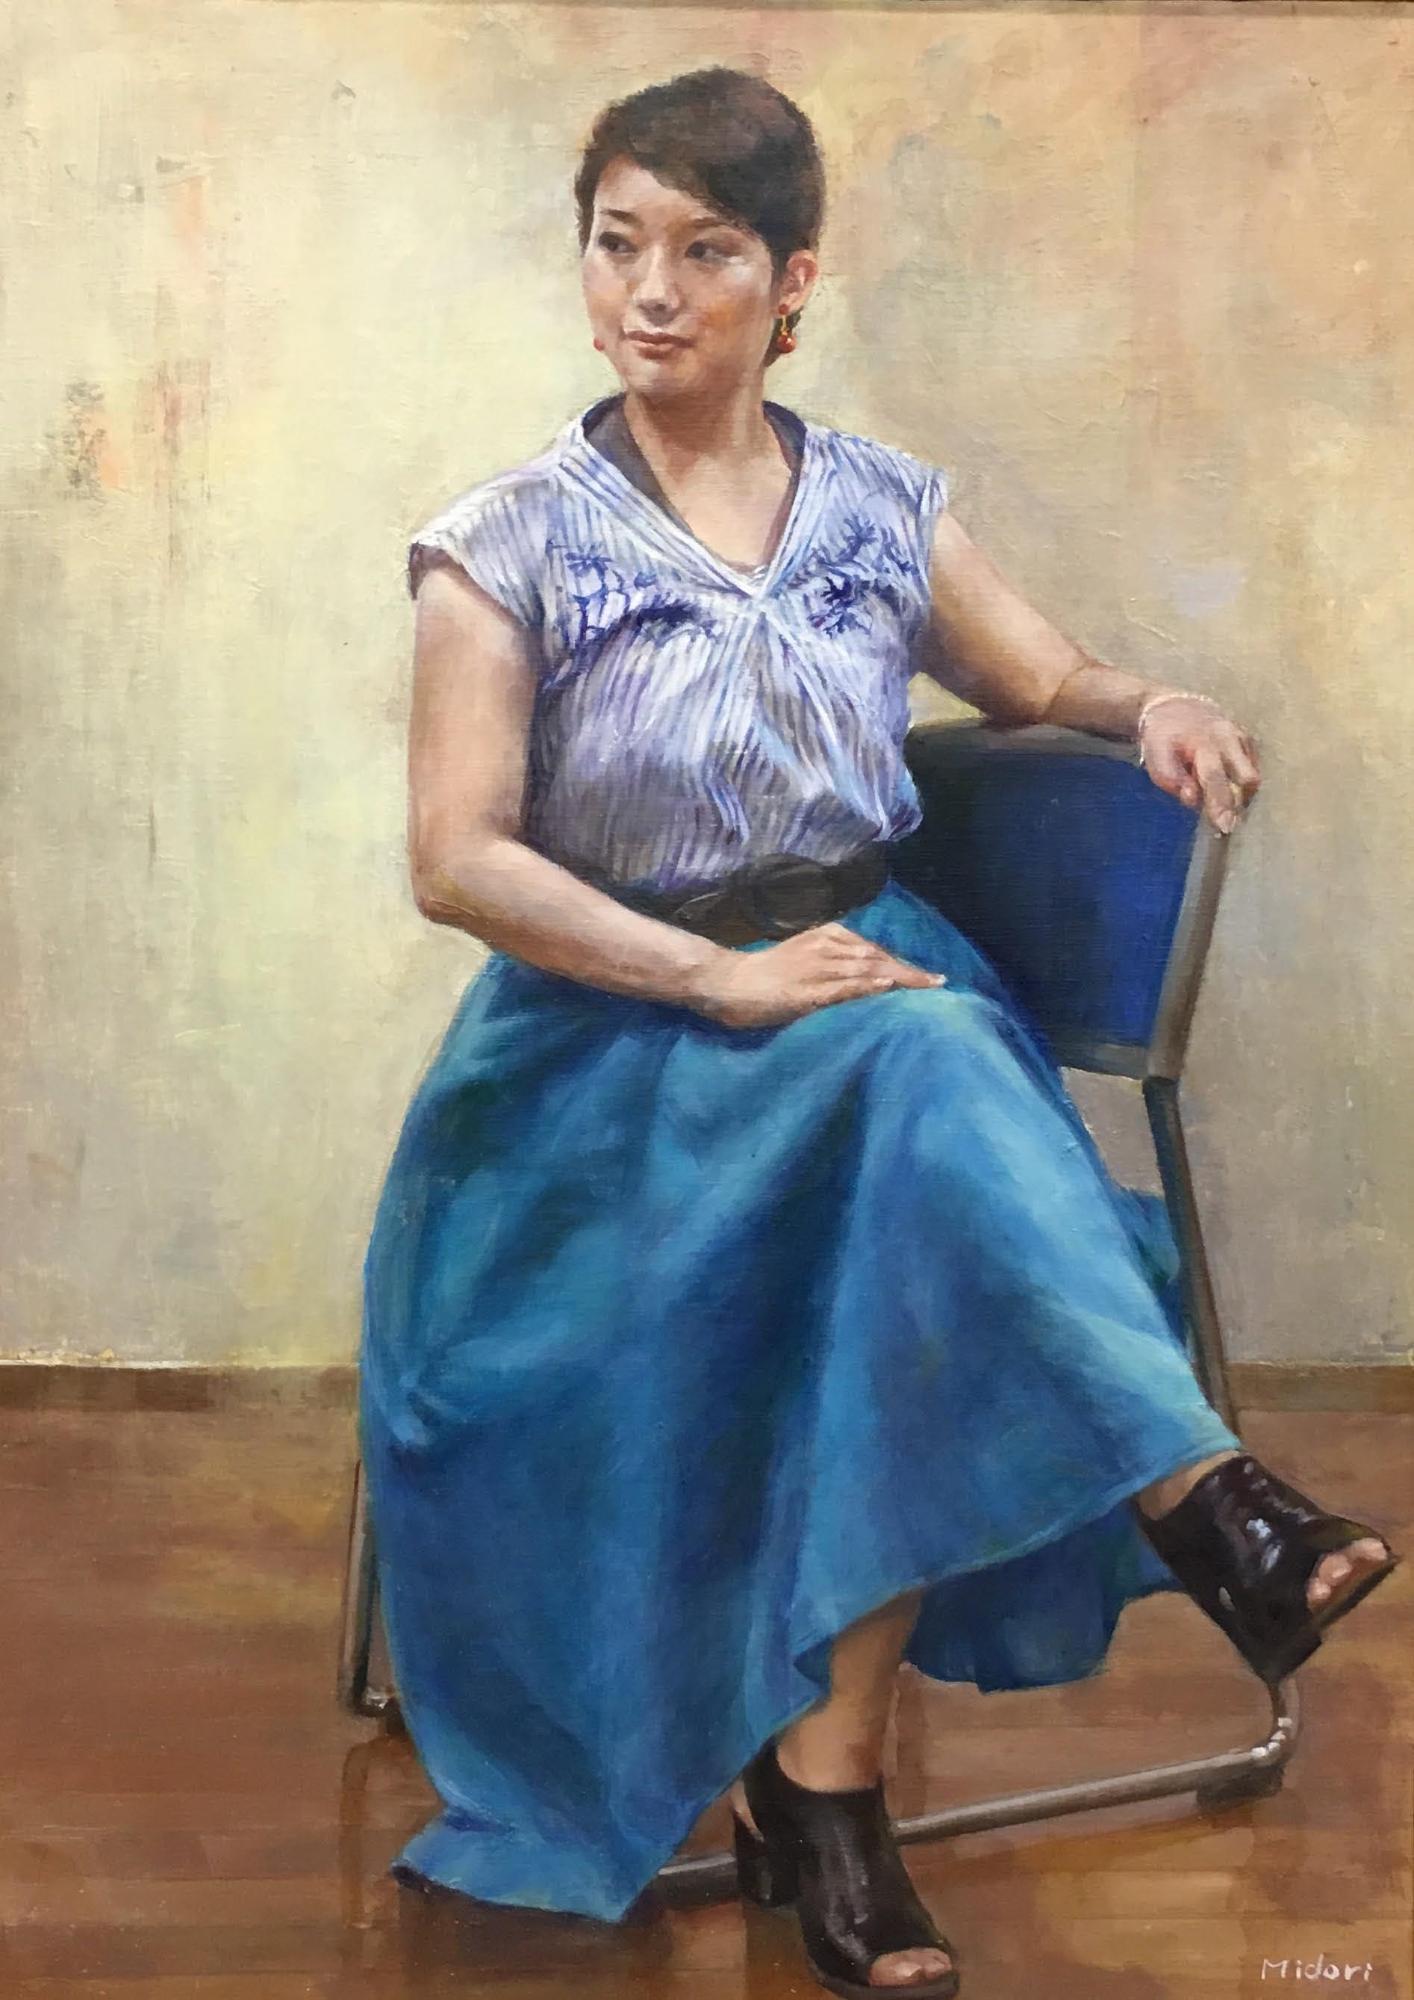 洋画部門市展賞受賞作品で女性が青い椅子に座っている様子の写真